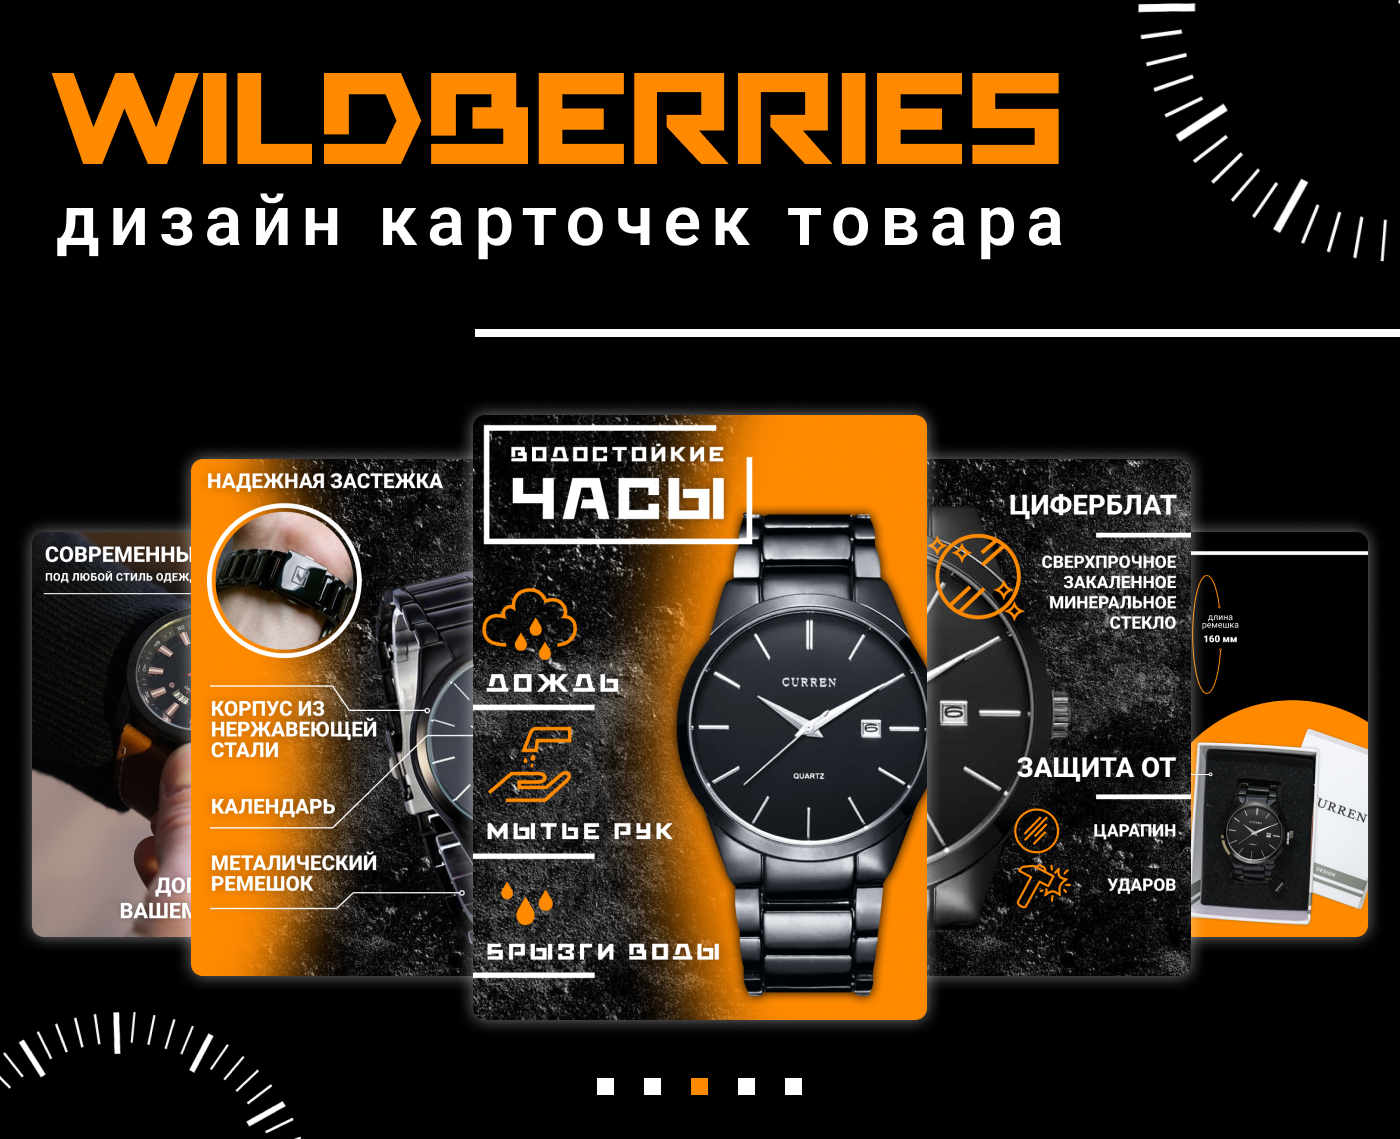 Инфографика Wildberries для карточек. Дизайн инфографики для Wildberries. Дизайн инфографика для маркетплейсов. Дизайн карточек товара для Wildberries.